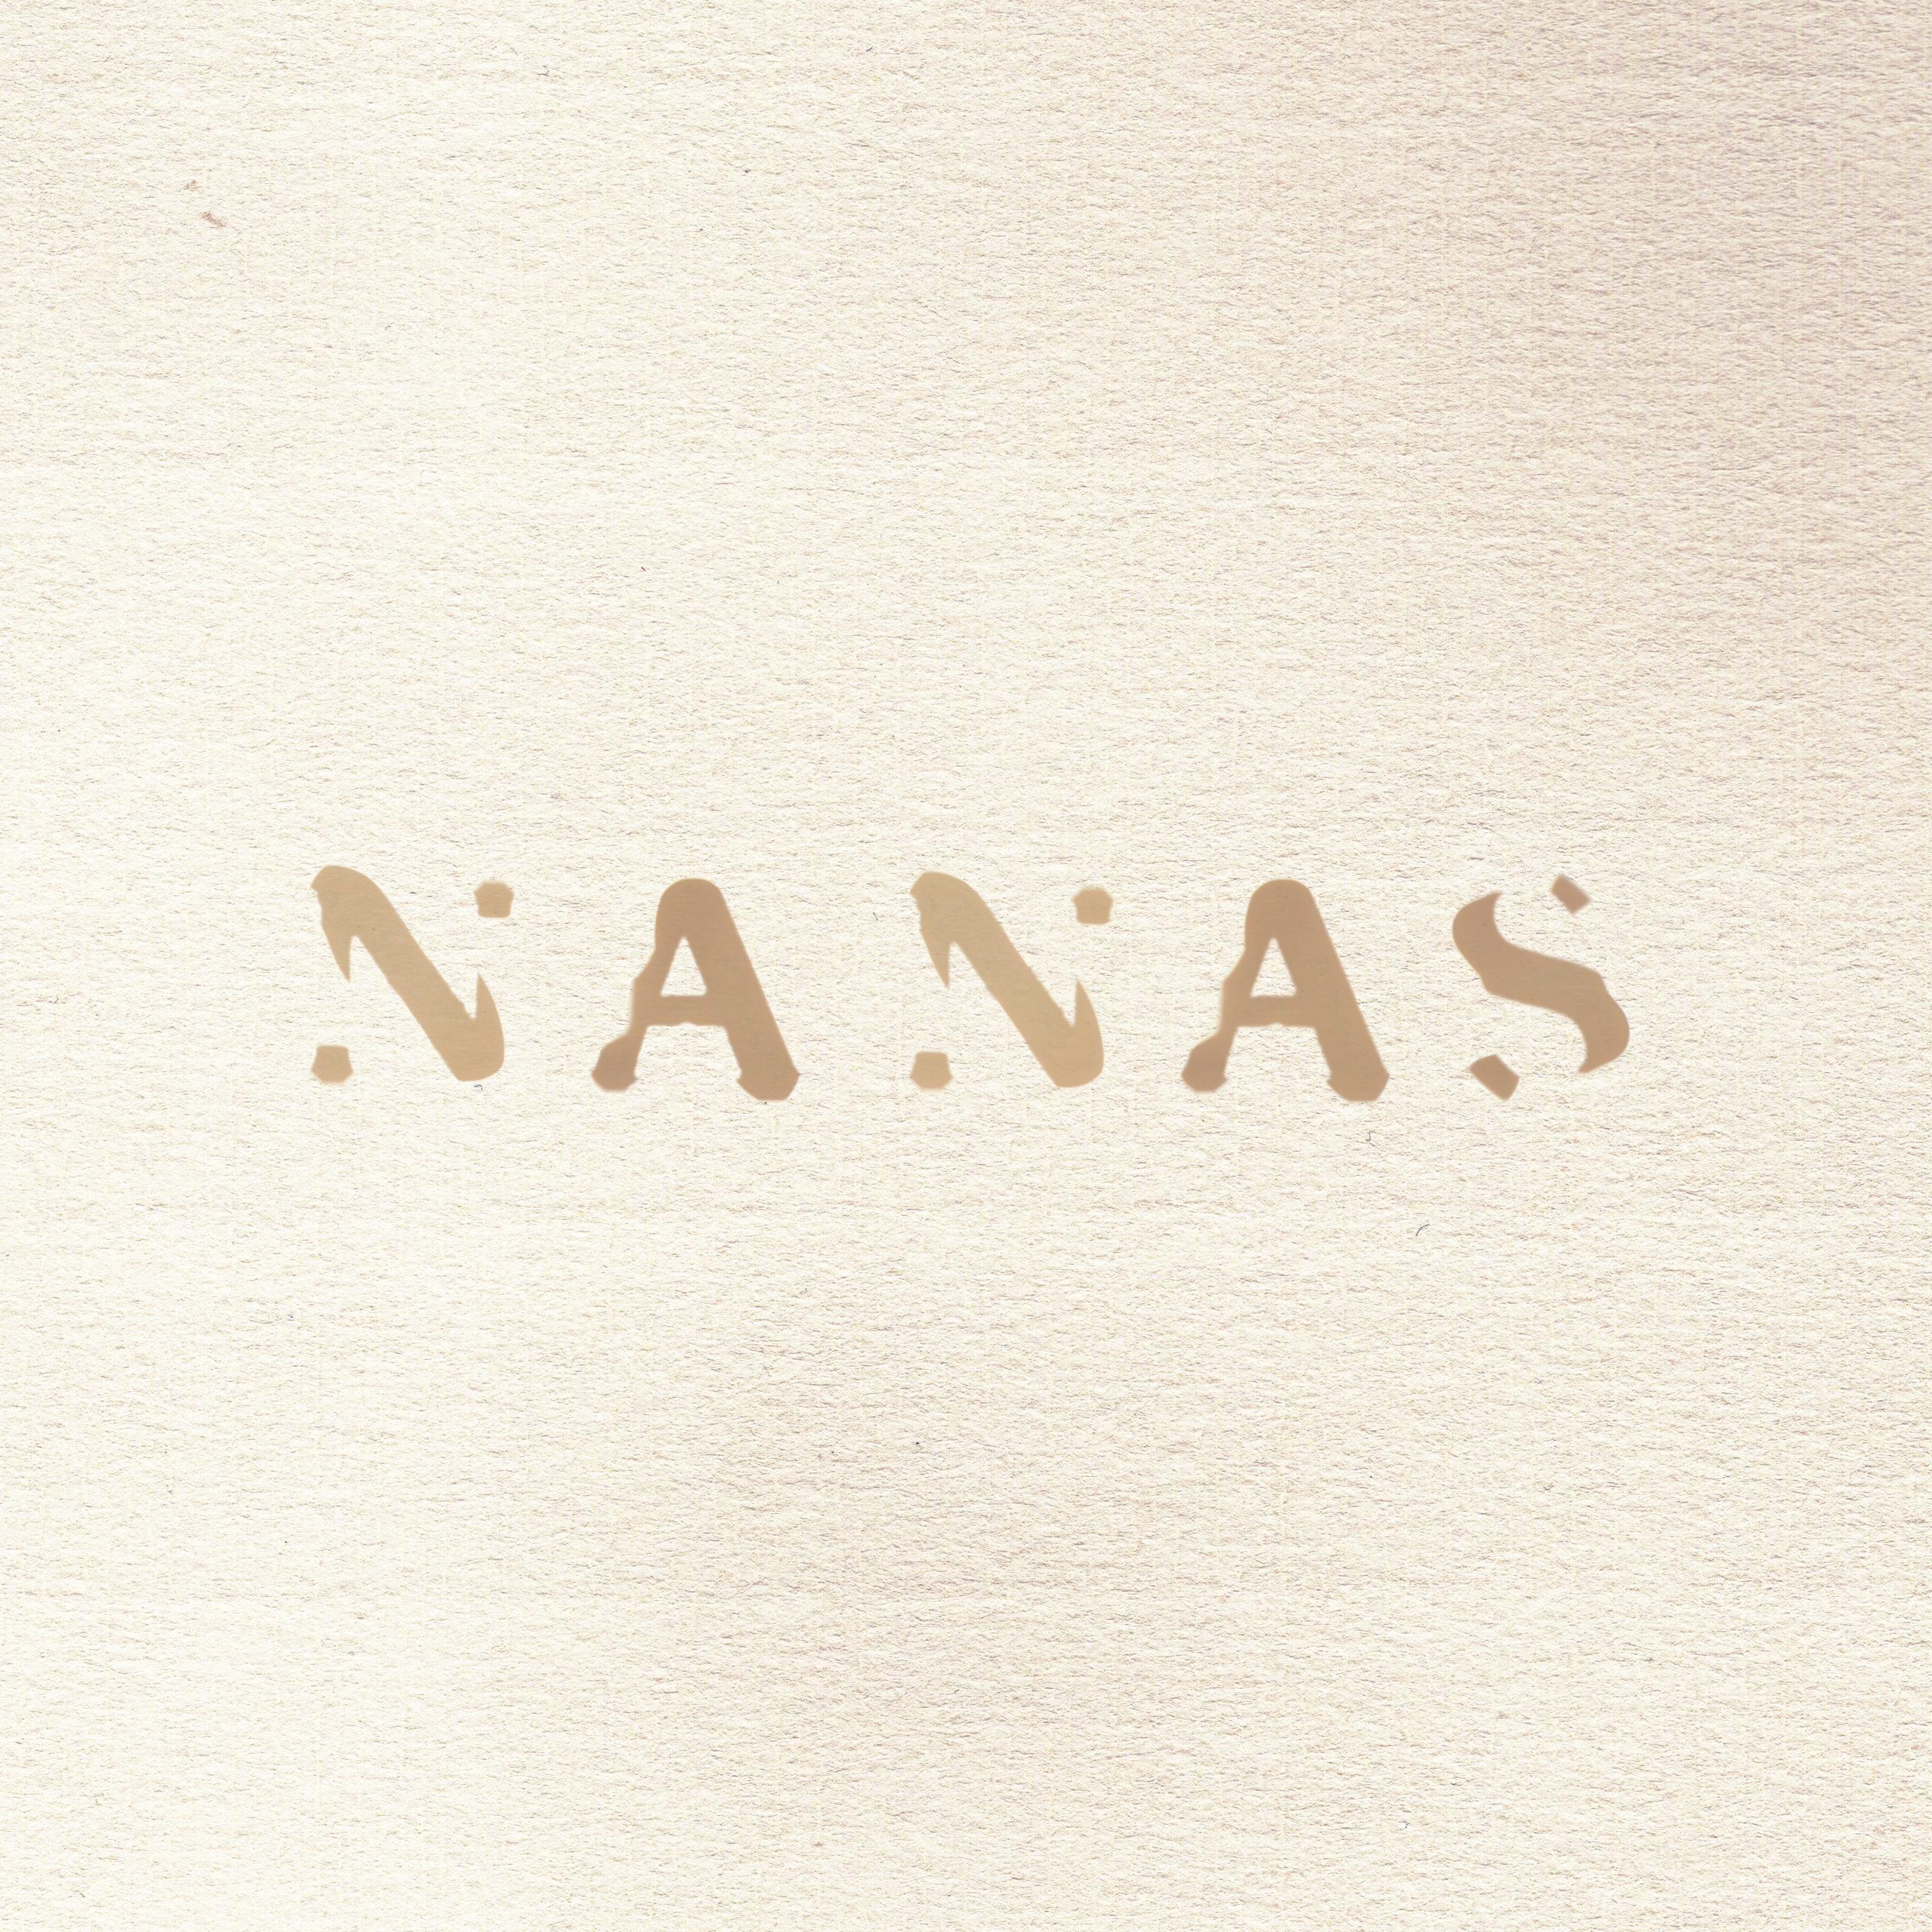 Lezna-Nanas-scaled